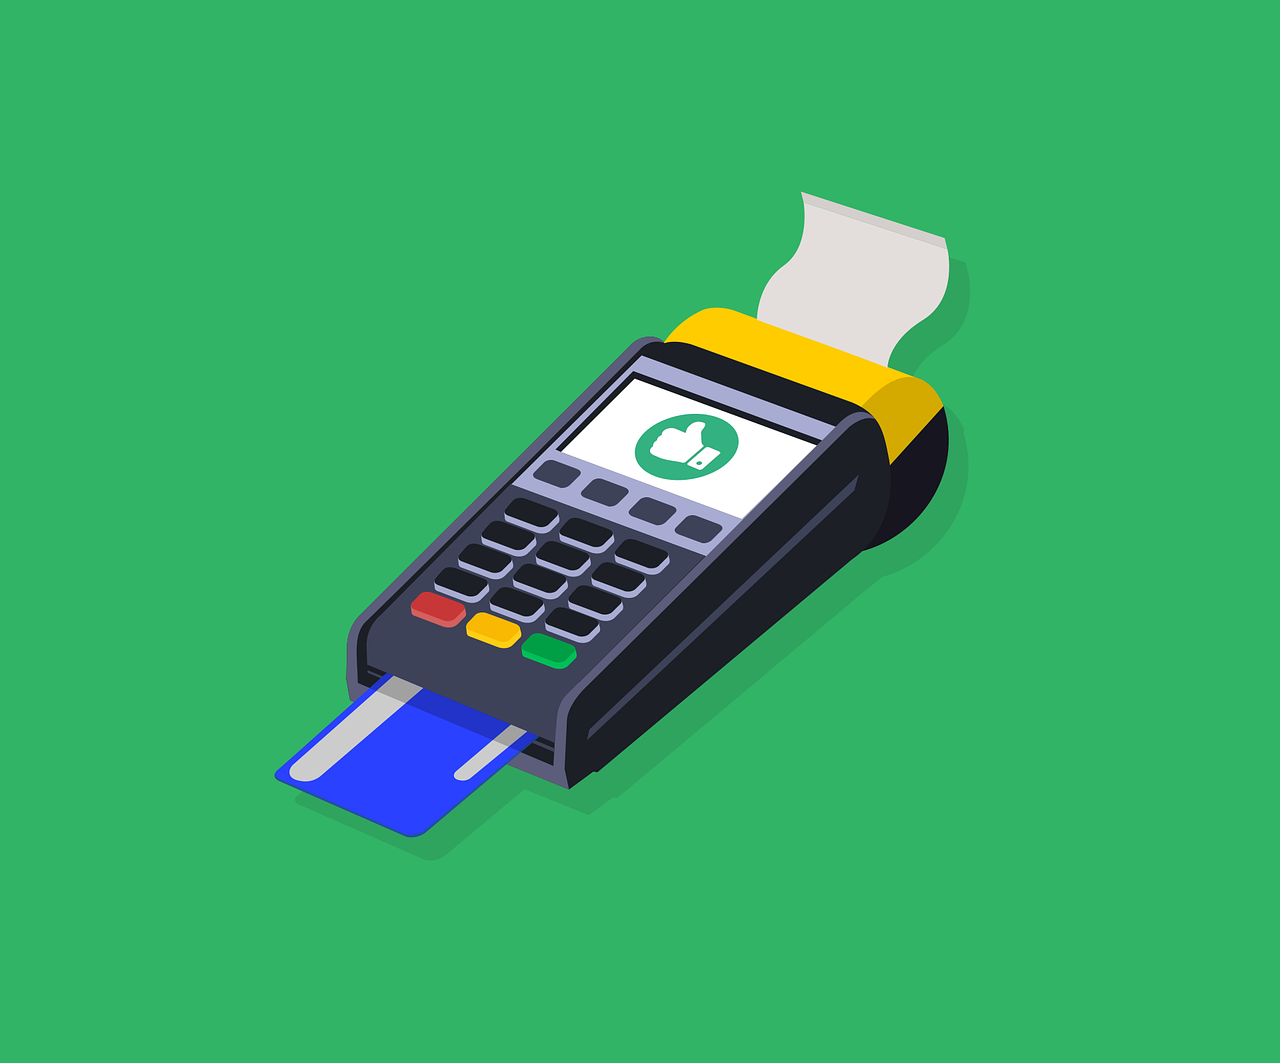 betaalterminal met bankkaart  - terminal de paiement avec carte bancaire